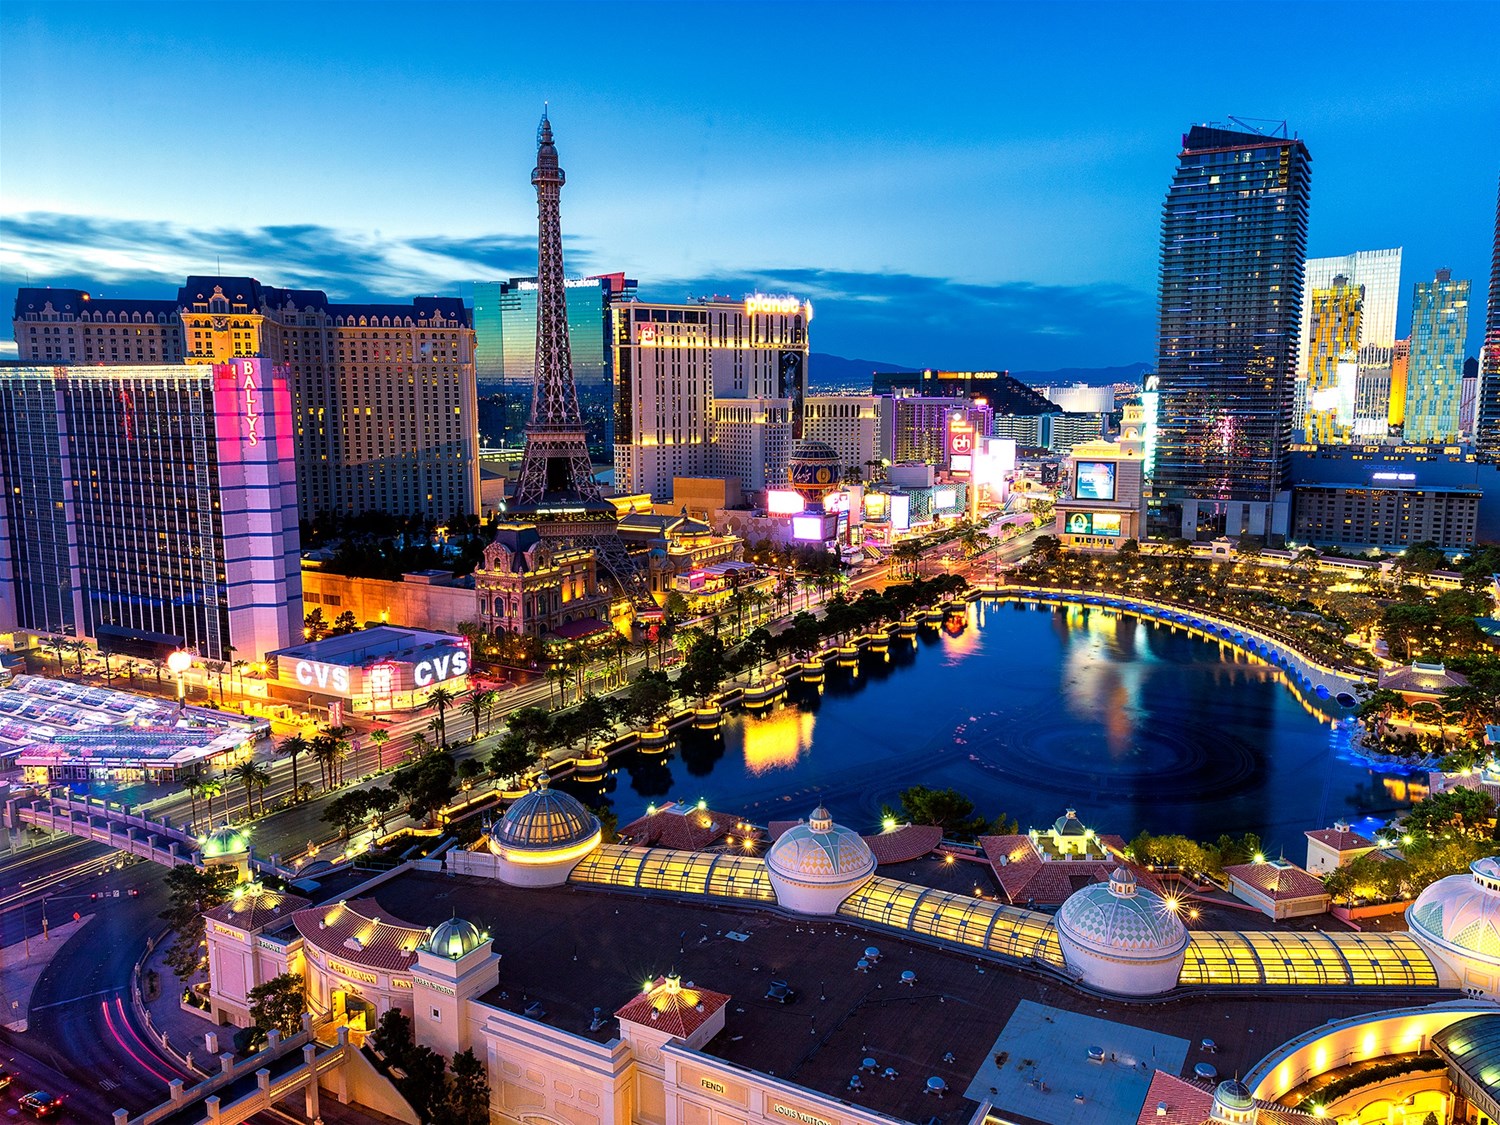 Viva Paris Las Vegas in 2020 – Dine, Travel & Entertainment